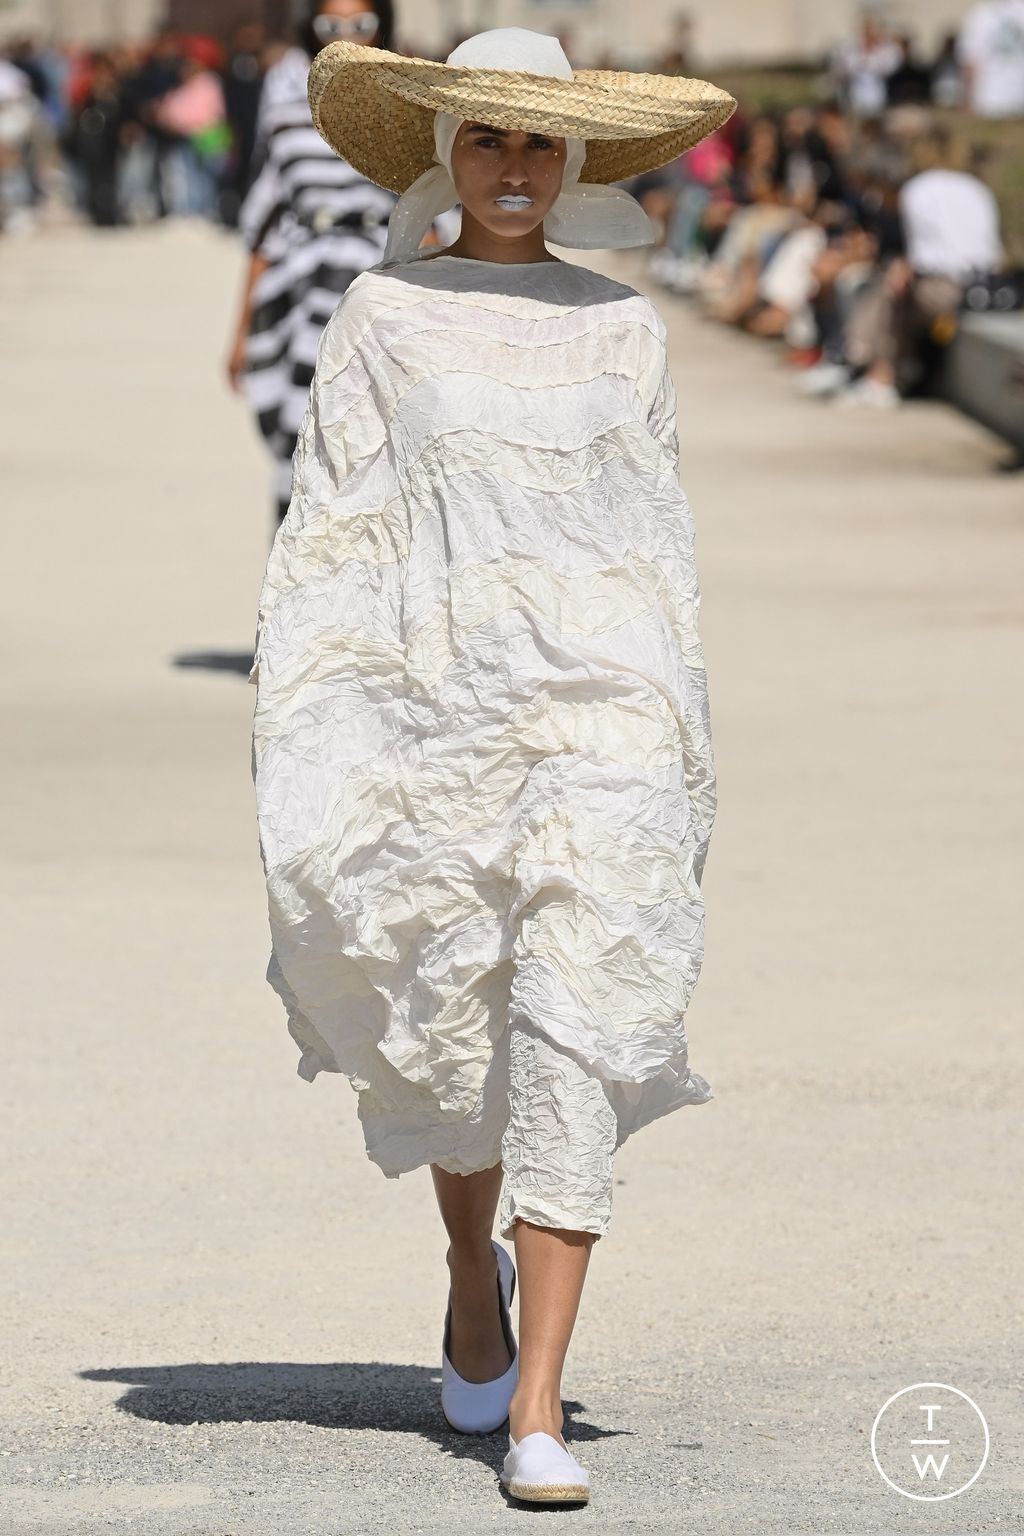 Philipp Plein SS23 womenswear #14 - Tagwalk: The Fashion Search Engine